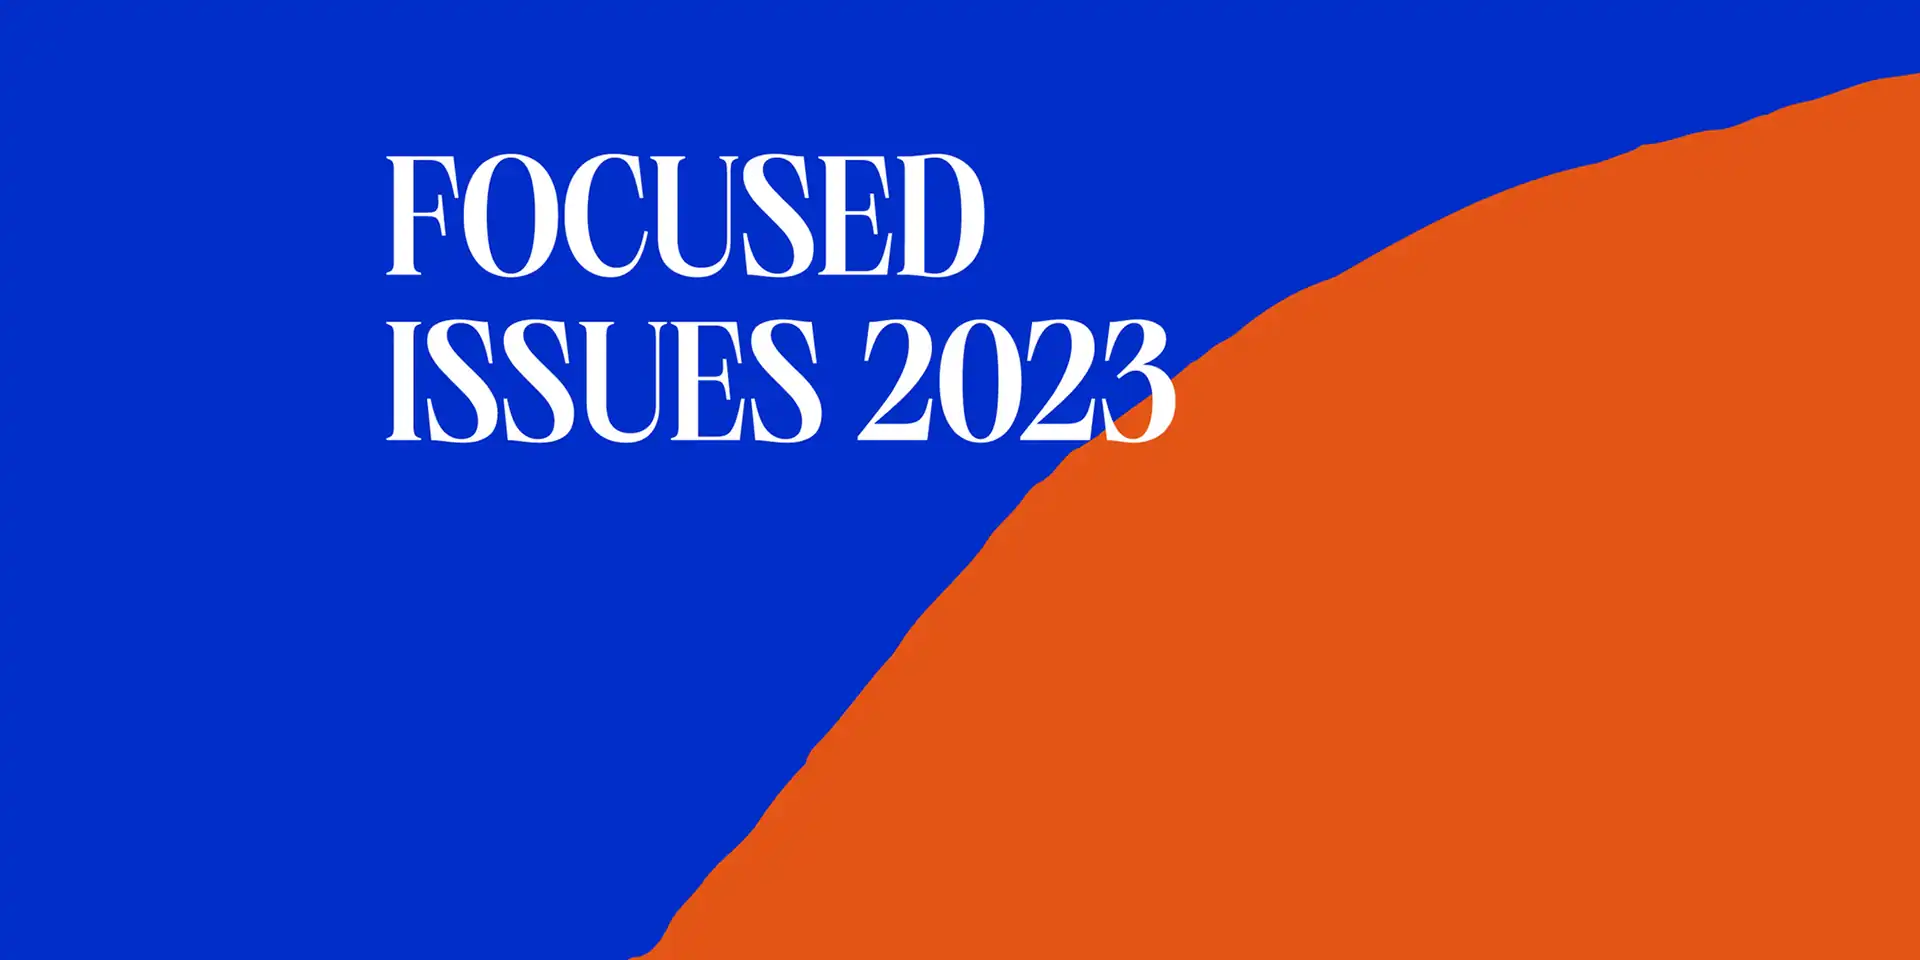 勇気と有機のあるデザインを紐解く：2023年度フォーカス・イシューレポート公開